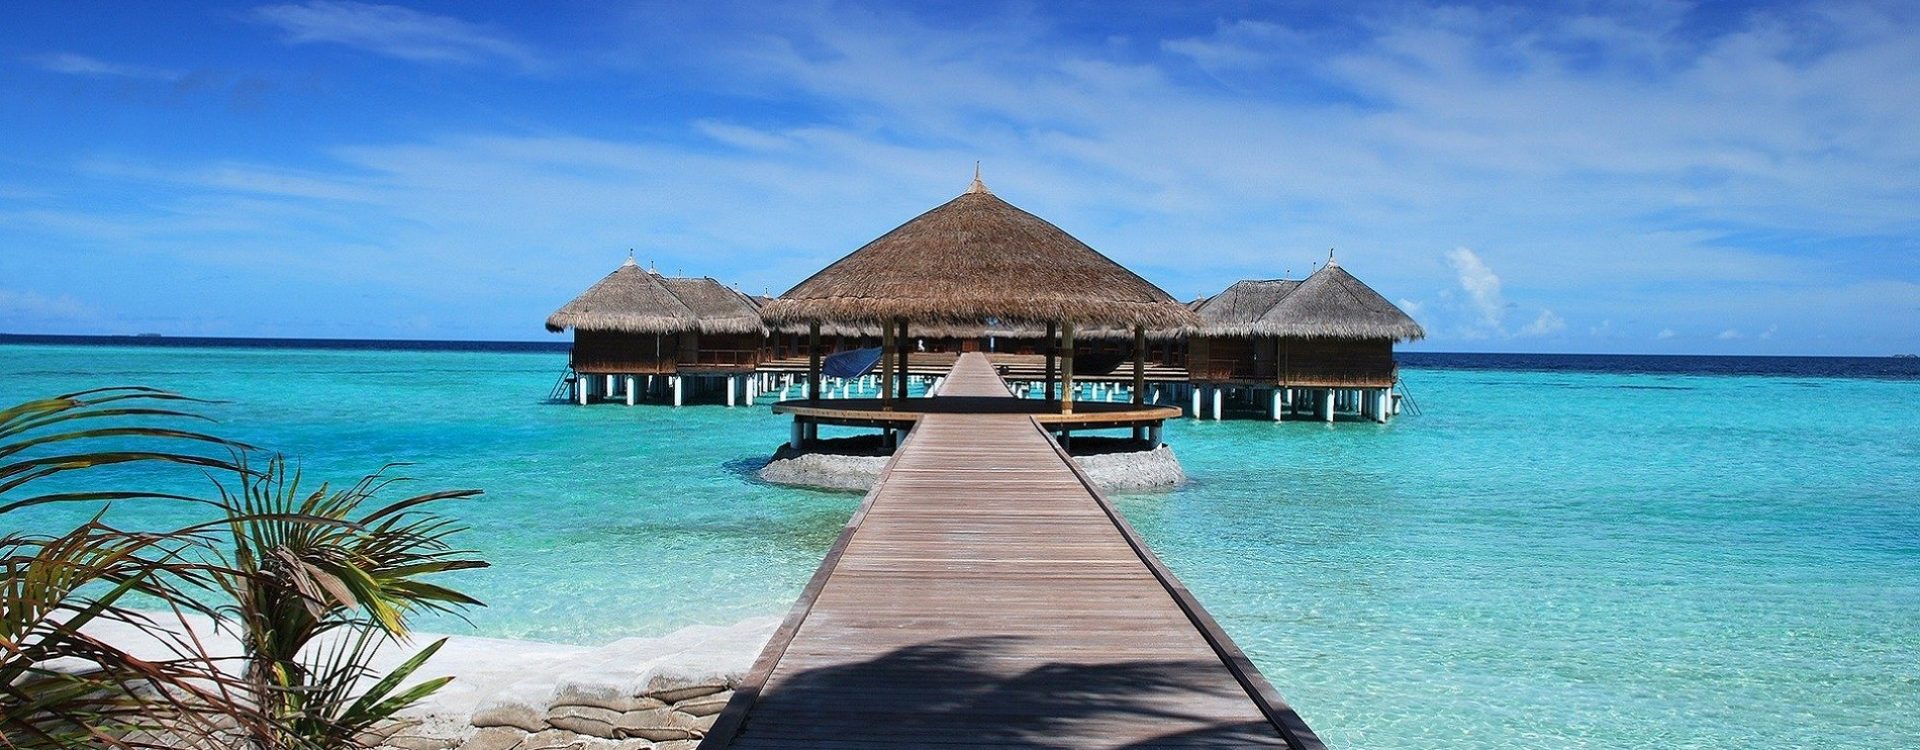 Maldivi su idealni za odmor na plaži. Putovanje na Maldive i boravak u bungalovu na plaži čini se pravim izborom za romantičnu avanturu.